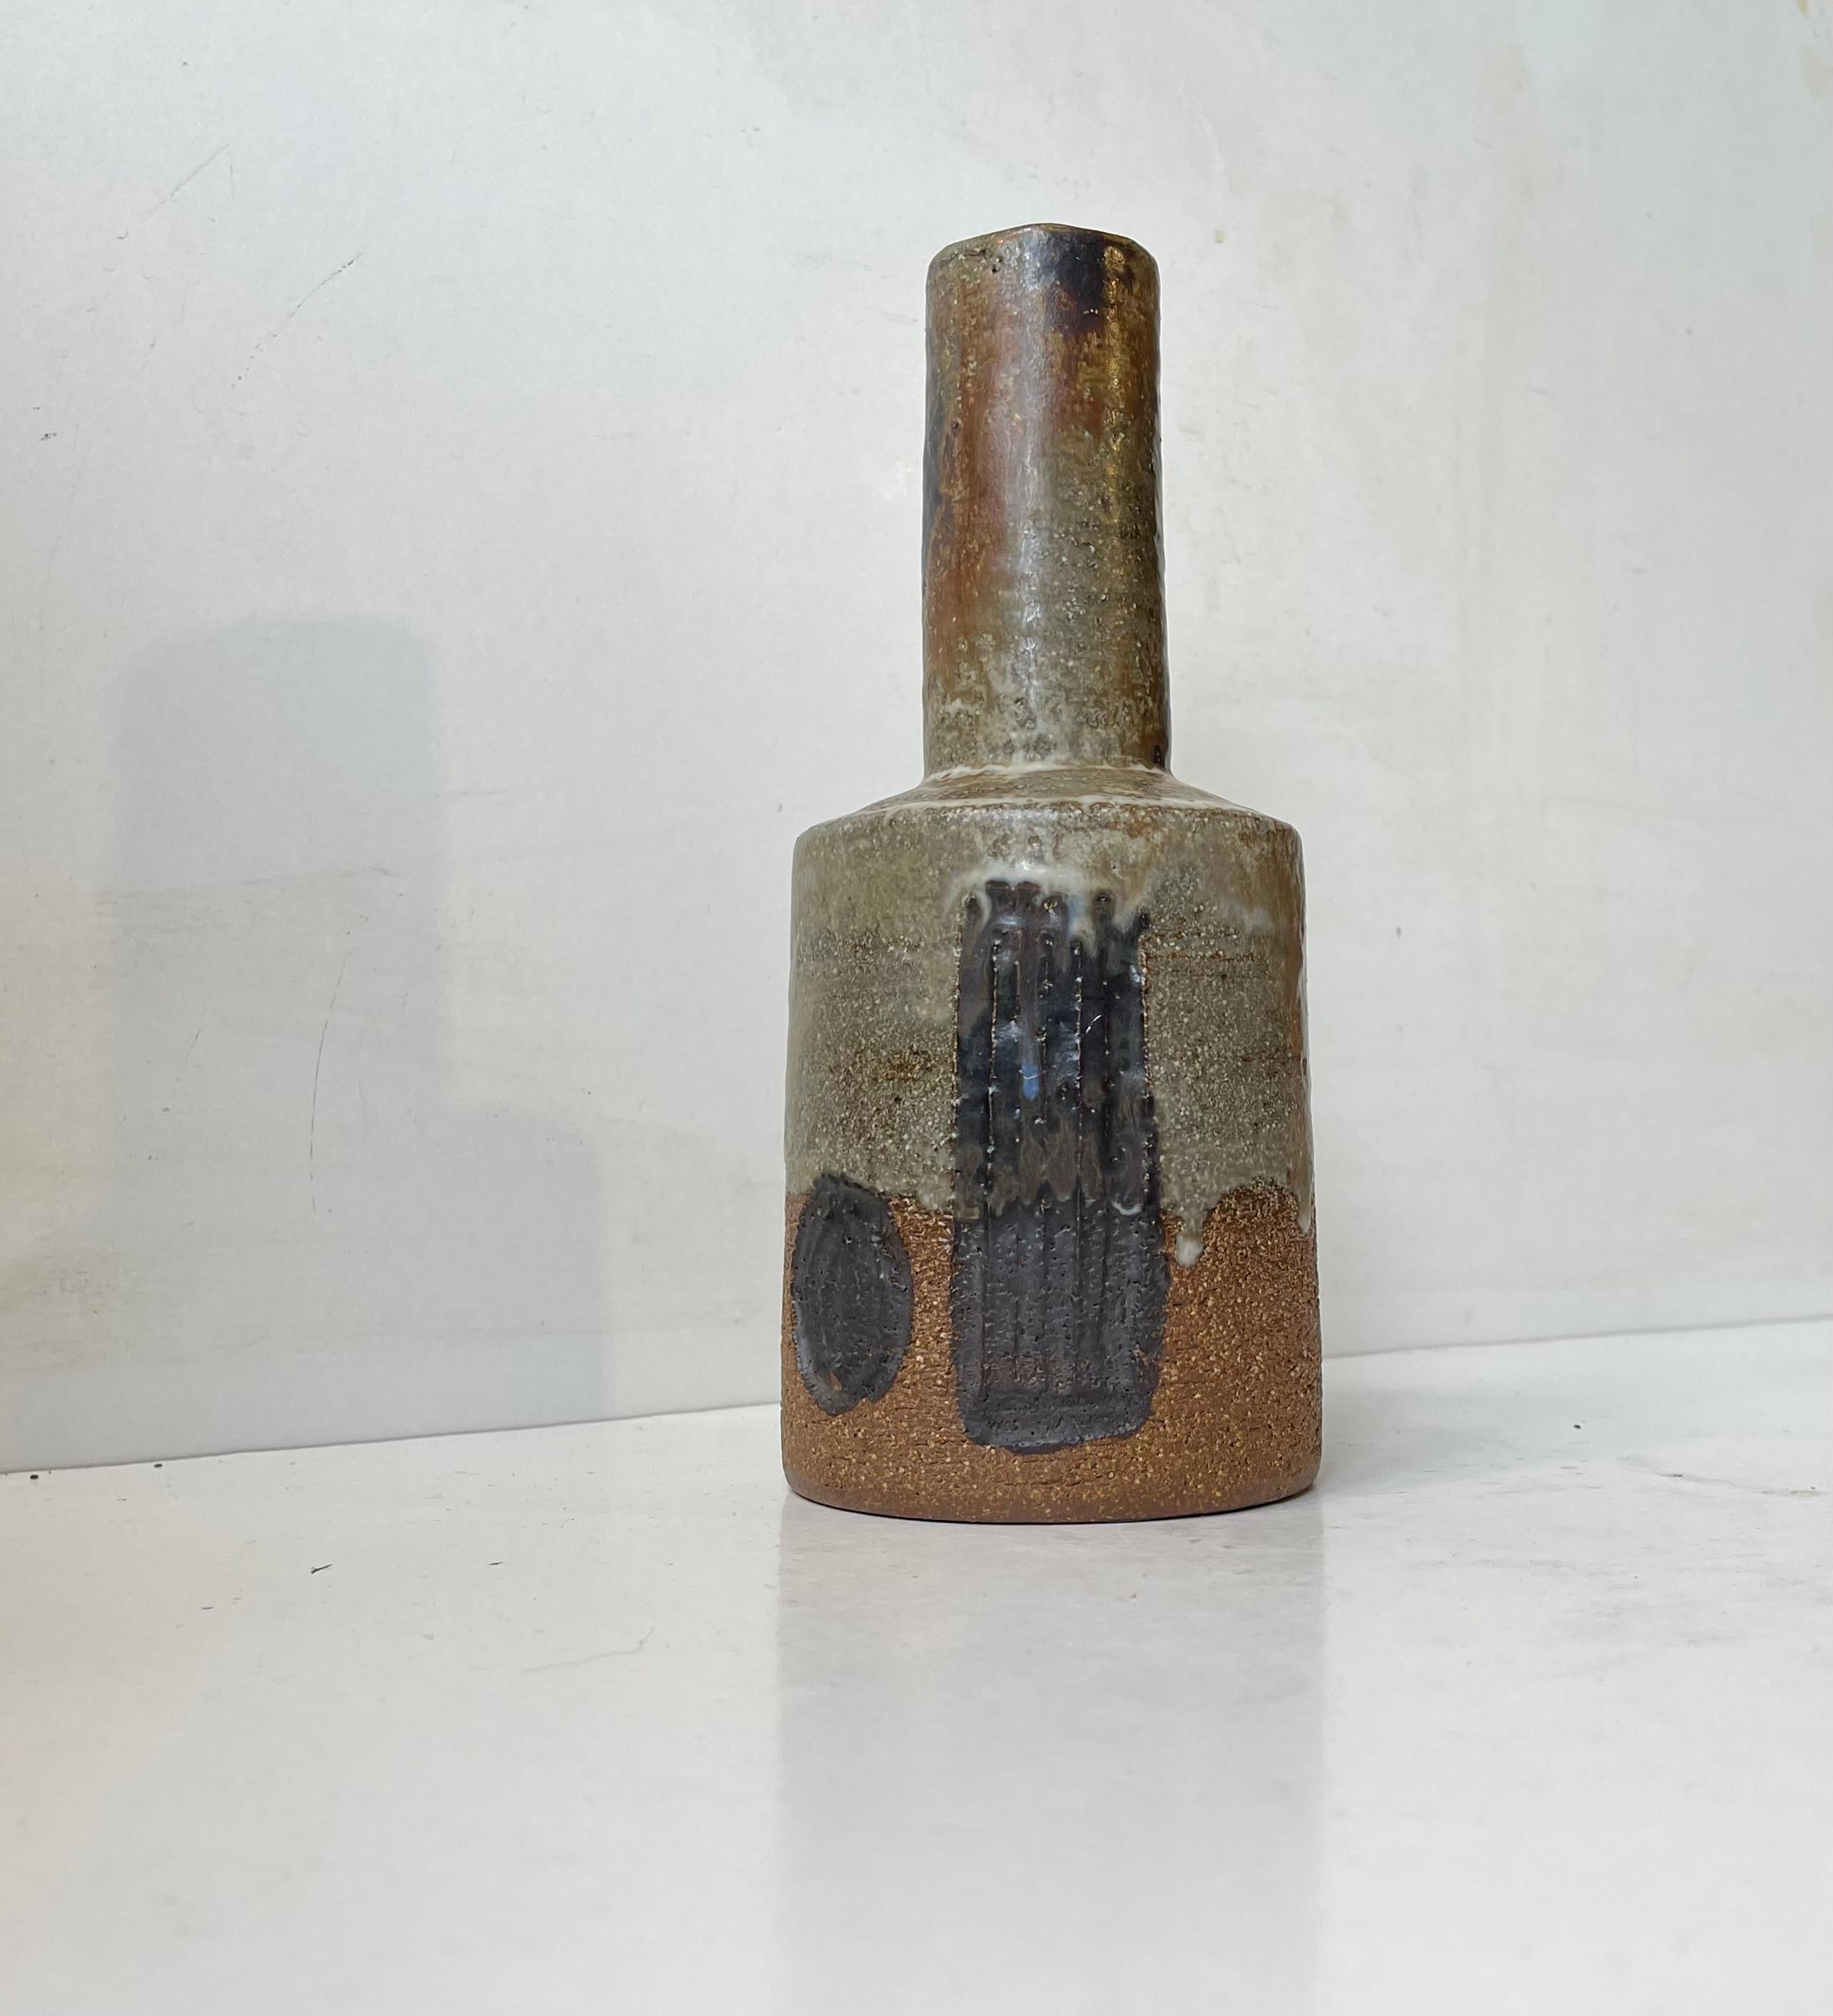 Schöne dänische Moderne Schamotte Steinzeug Flasche / Mallet geformt Vase. Entworfen von Jette Hellerøe für Axella Design in den frühen 1970er Jahren. Das abstrakte geometrische Dekor, das in den Ton gemeißelt wurde, ist selektiv mit einer matten